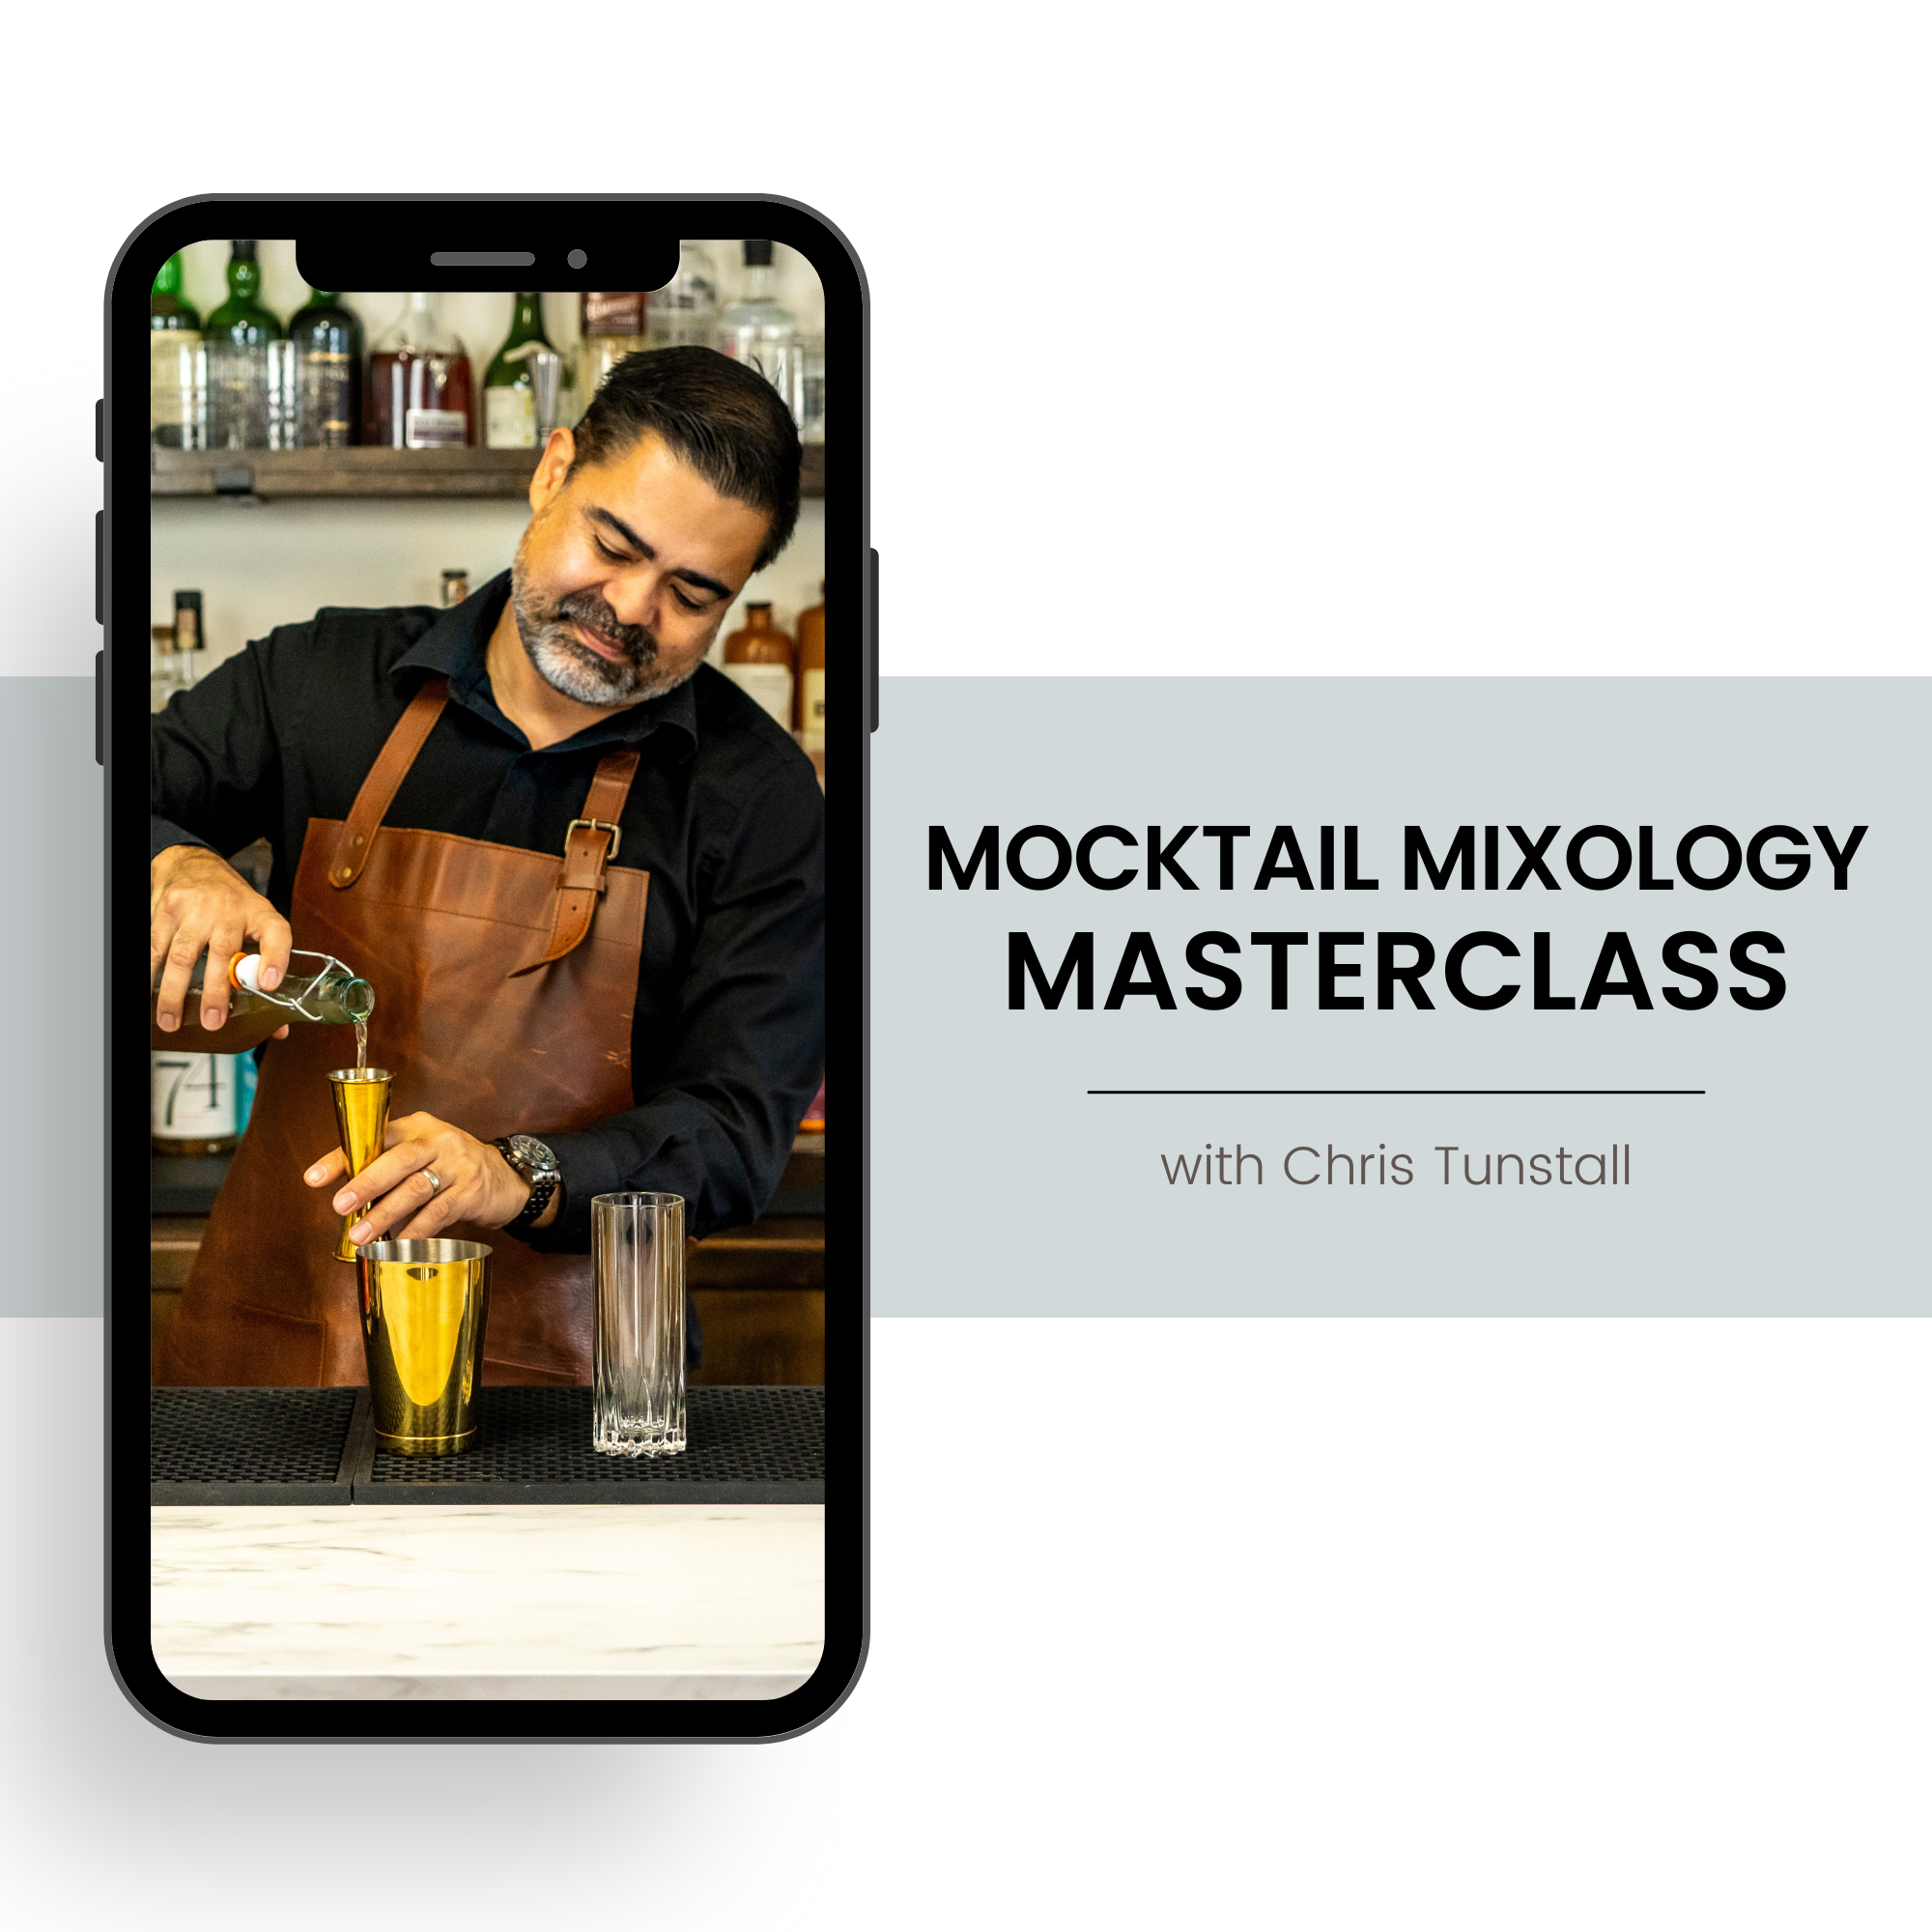 Mocktail Mixology Masterclass